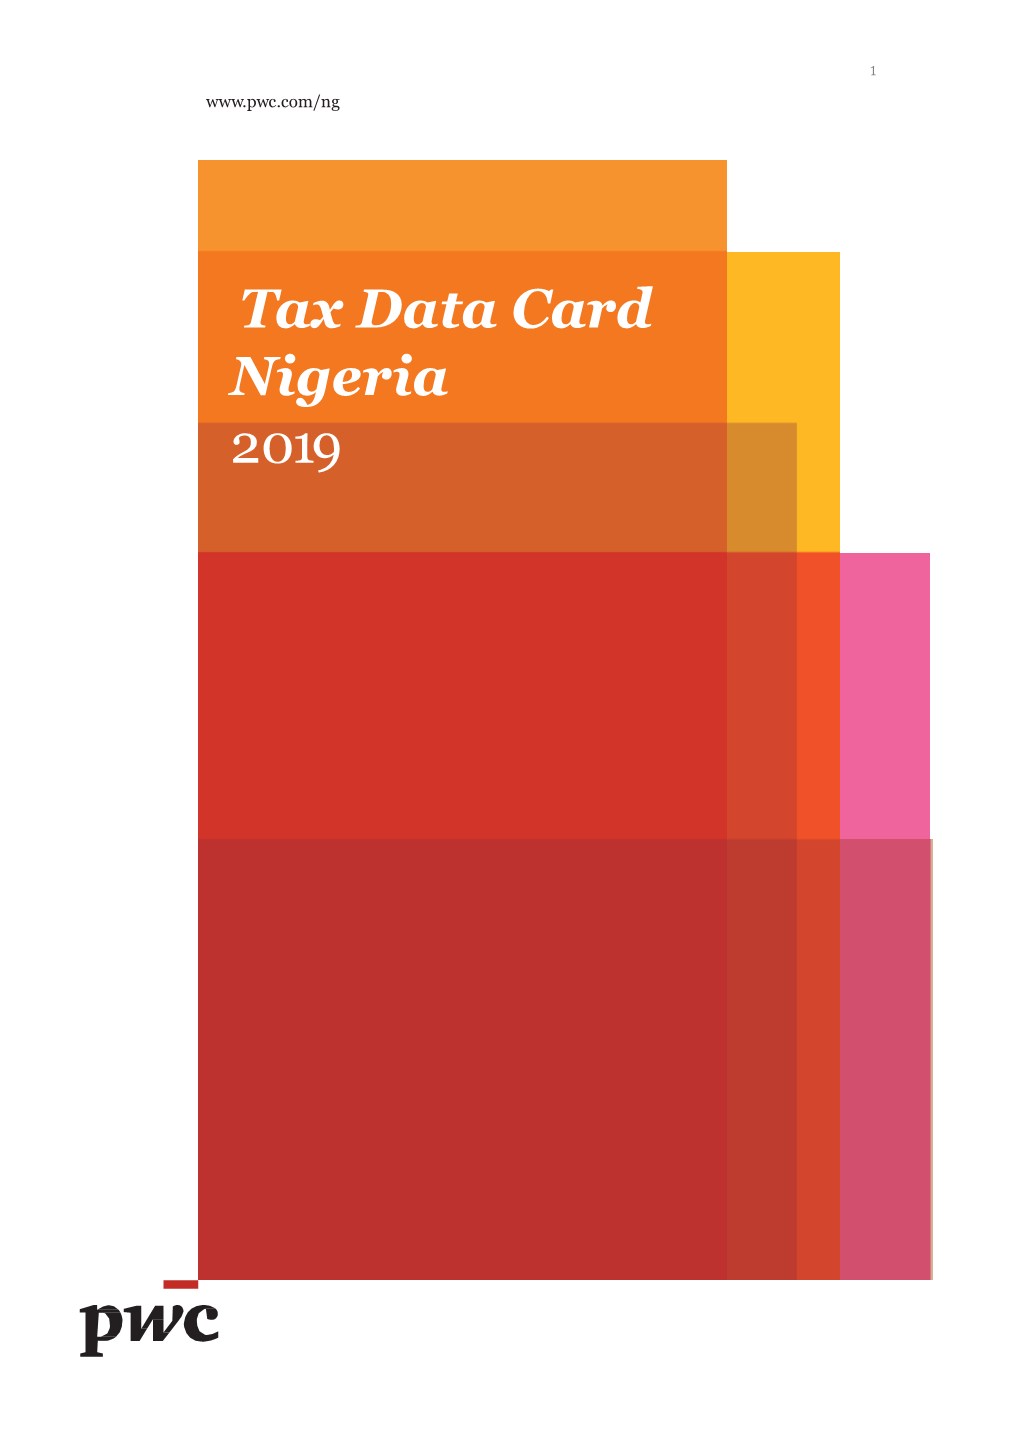 Nigeria Tax Data Card 2019